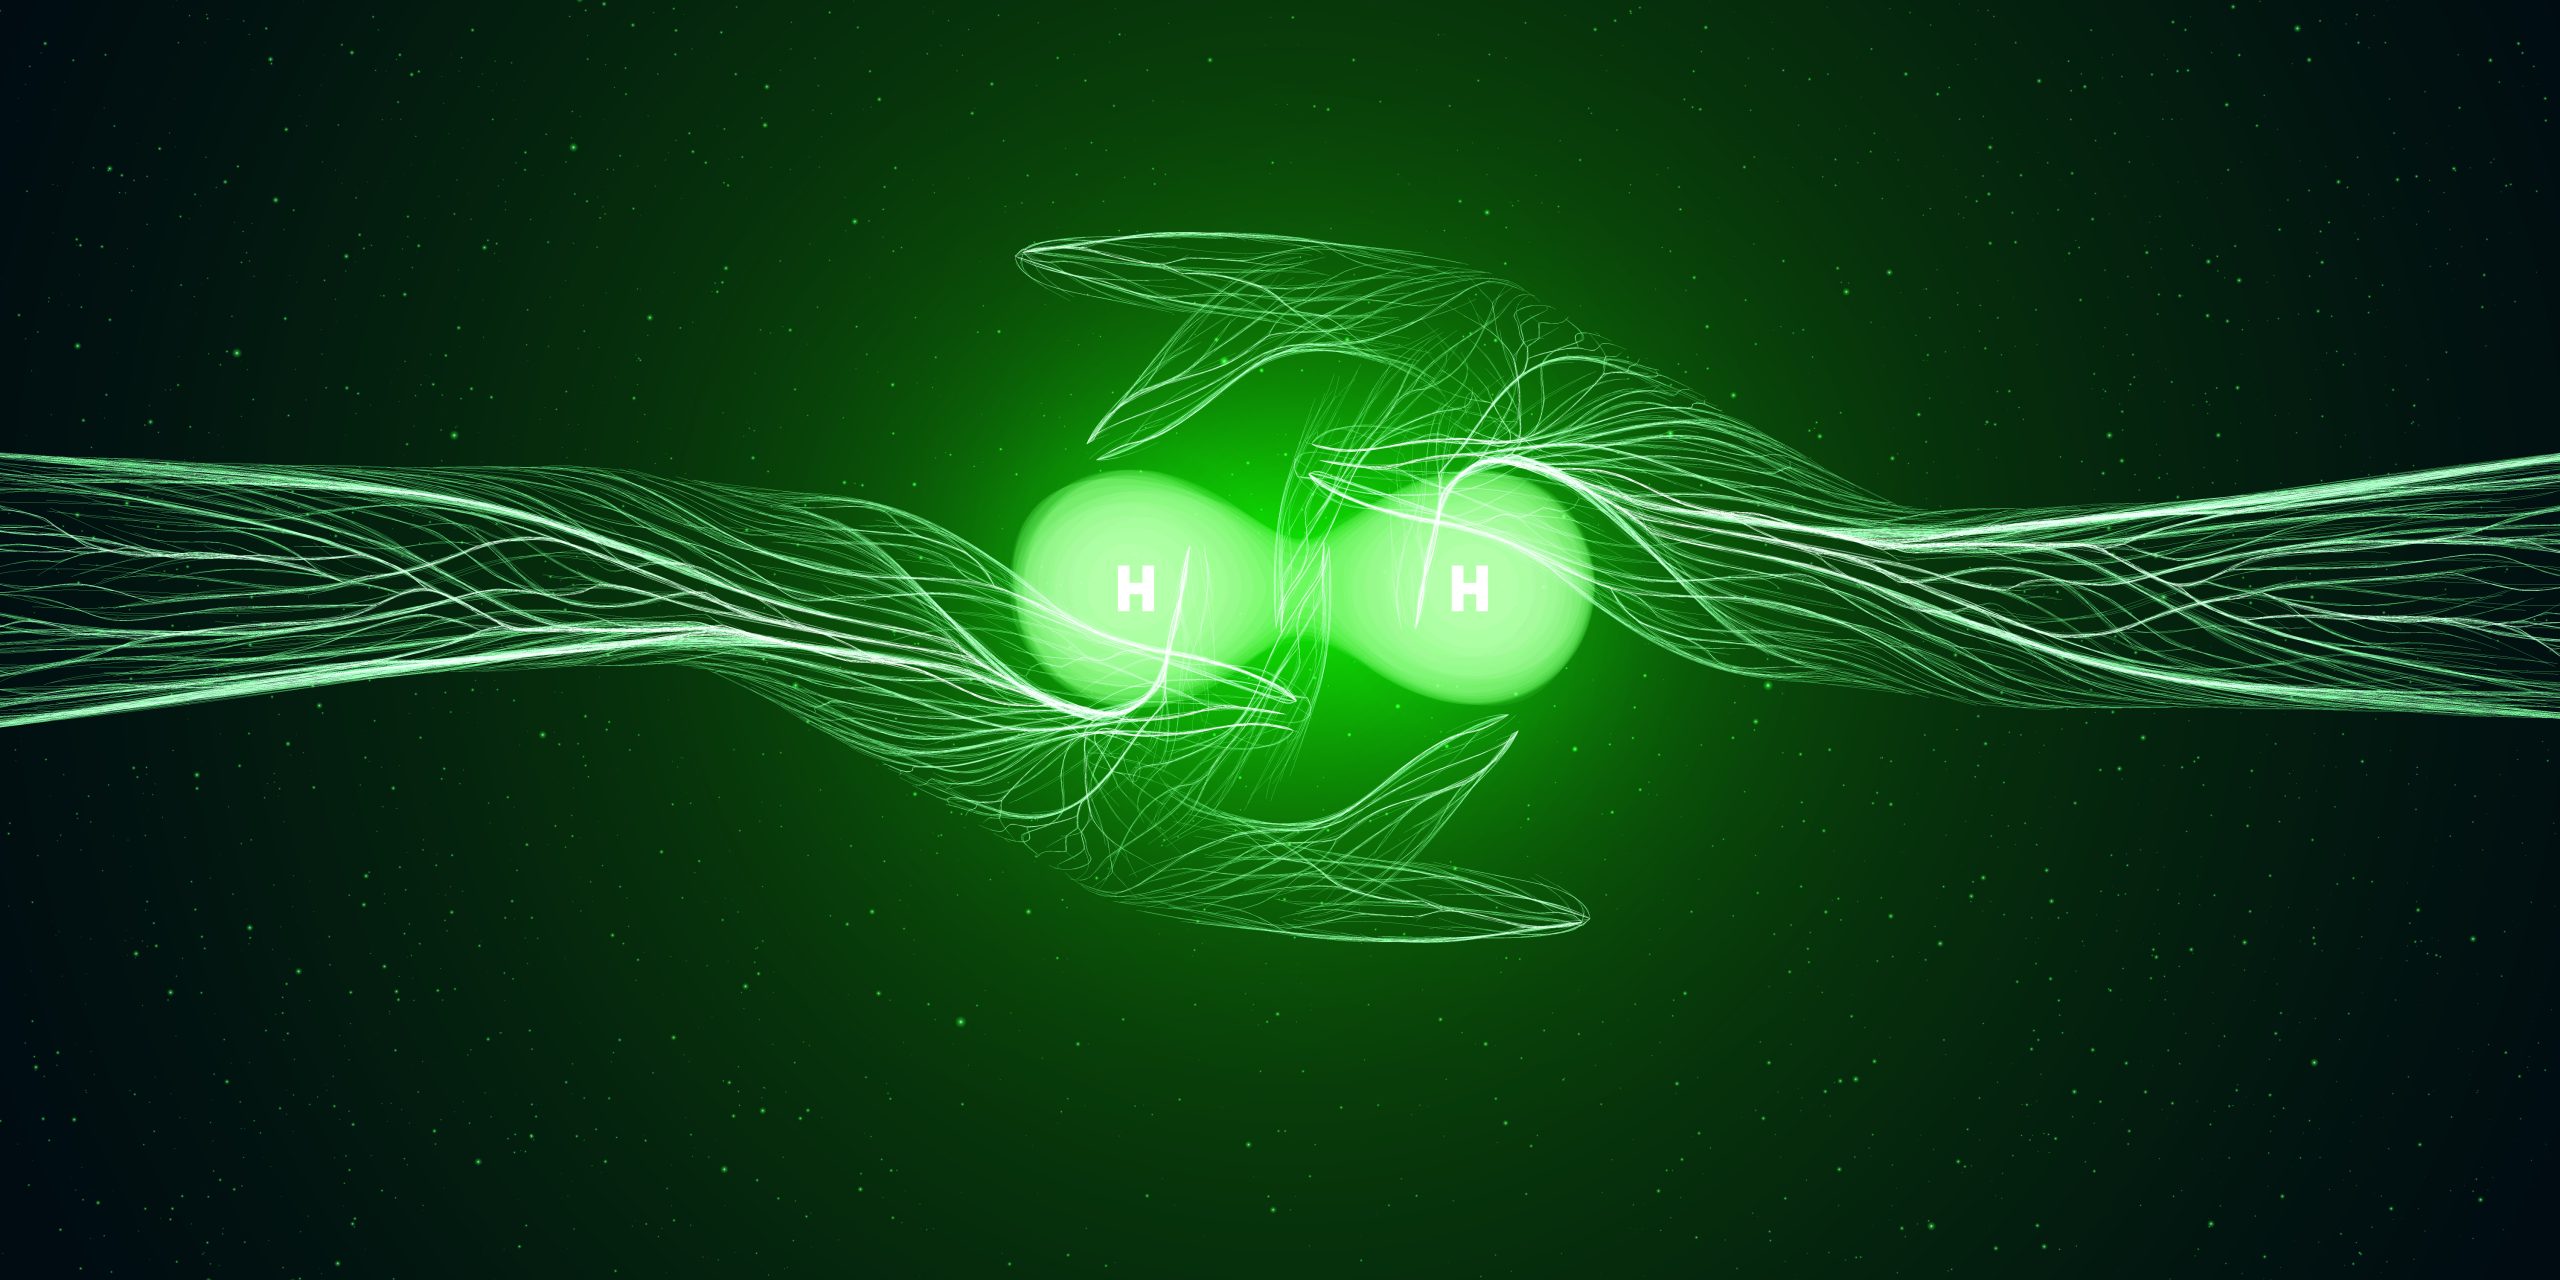 Idrogeno verde, una borsa di dottorato di ricerca alla Unicusano